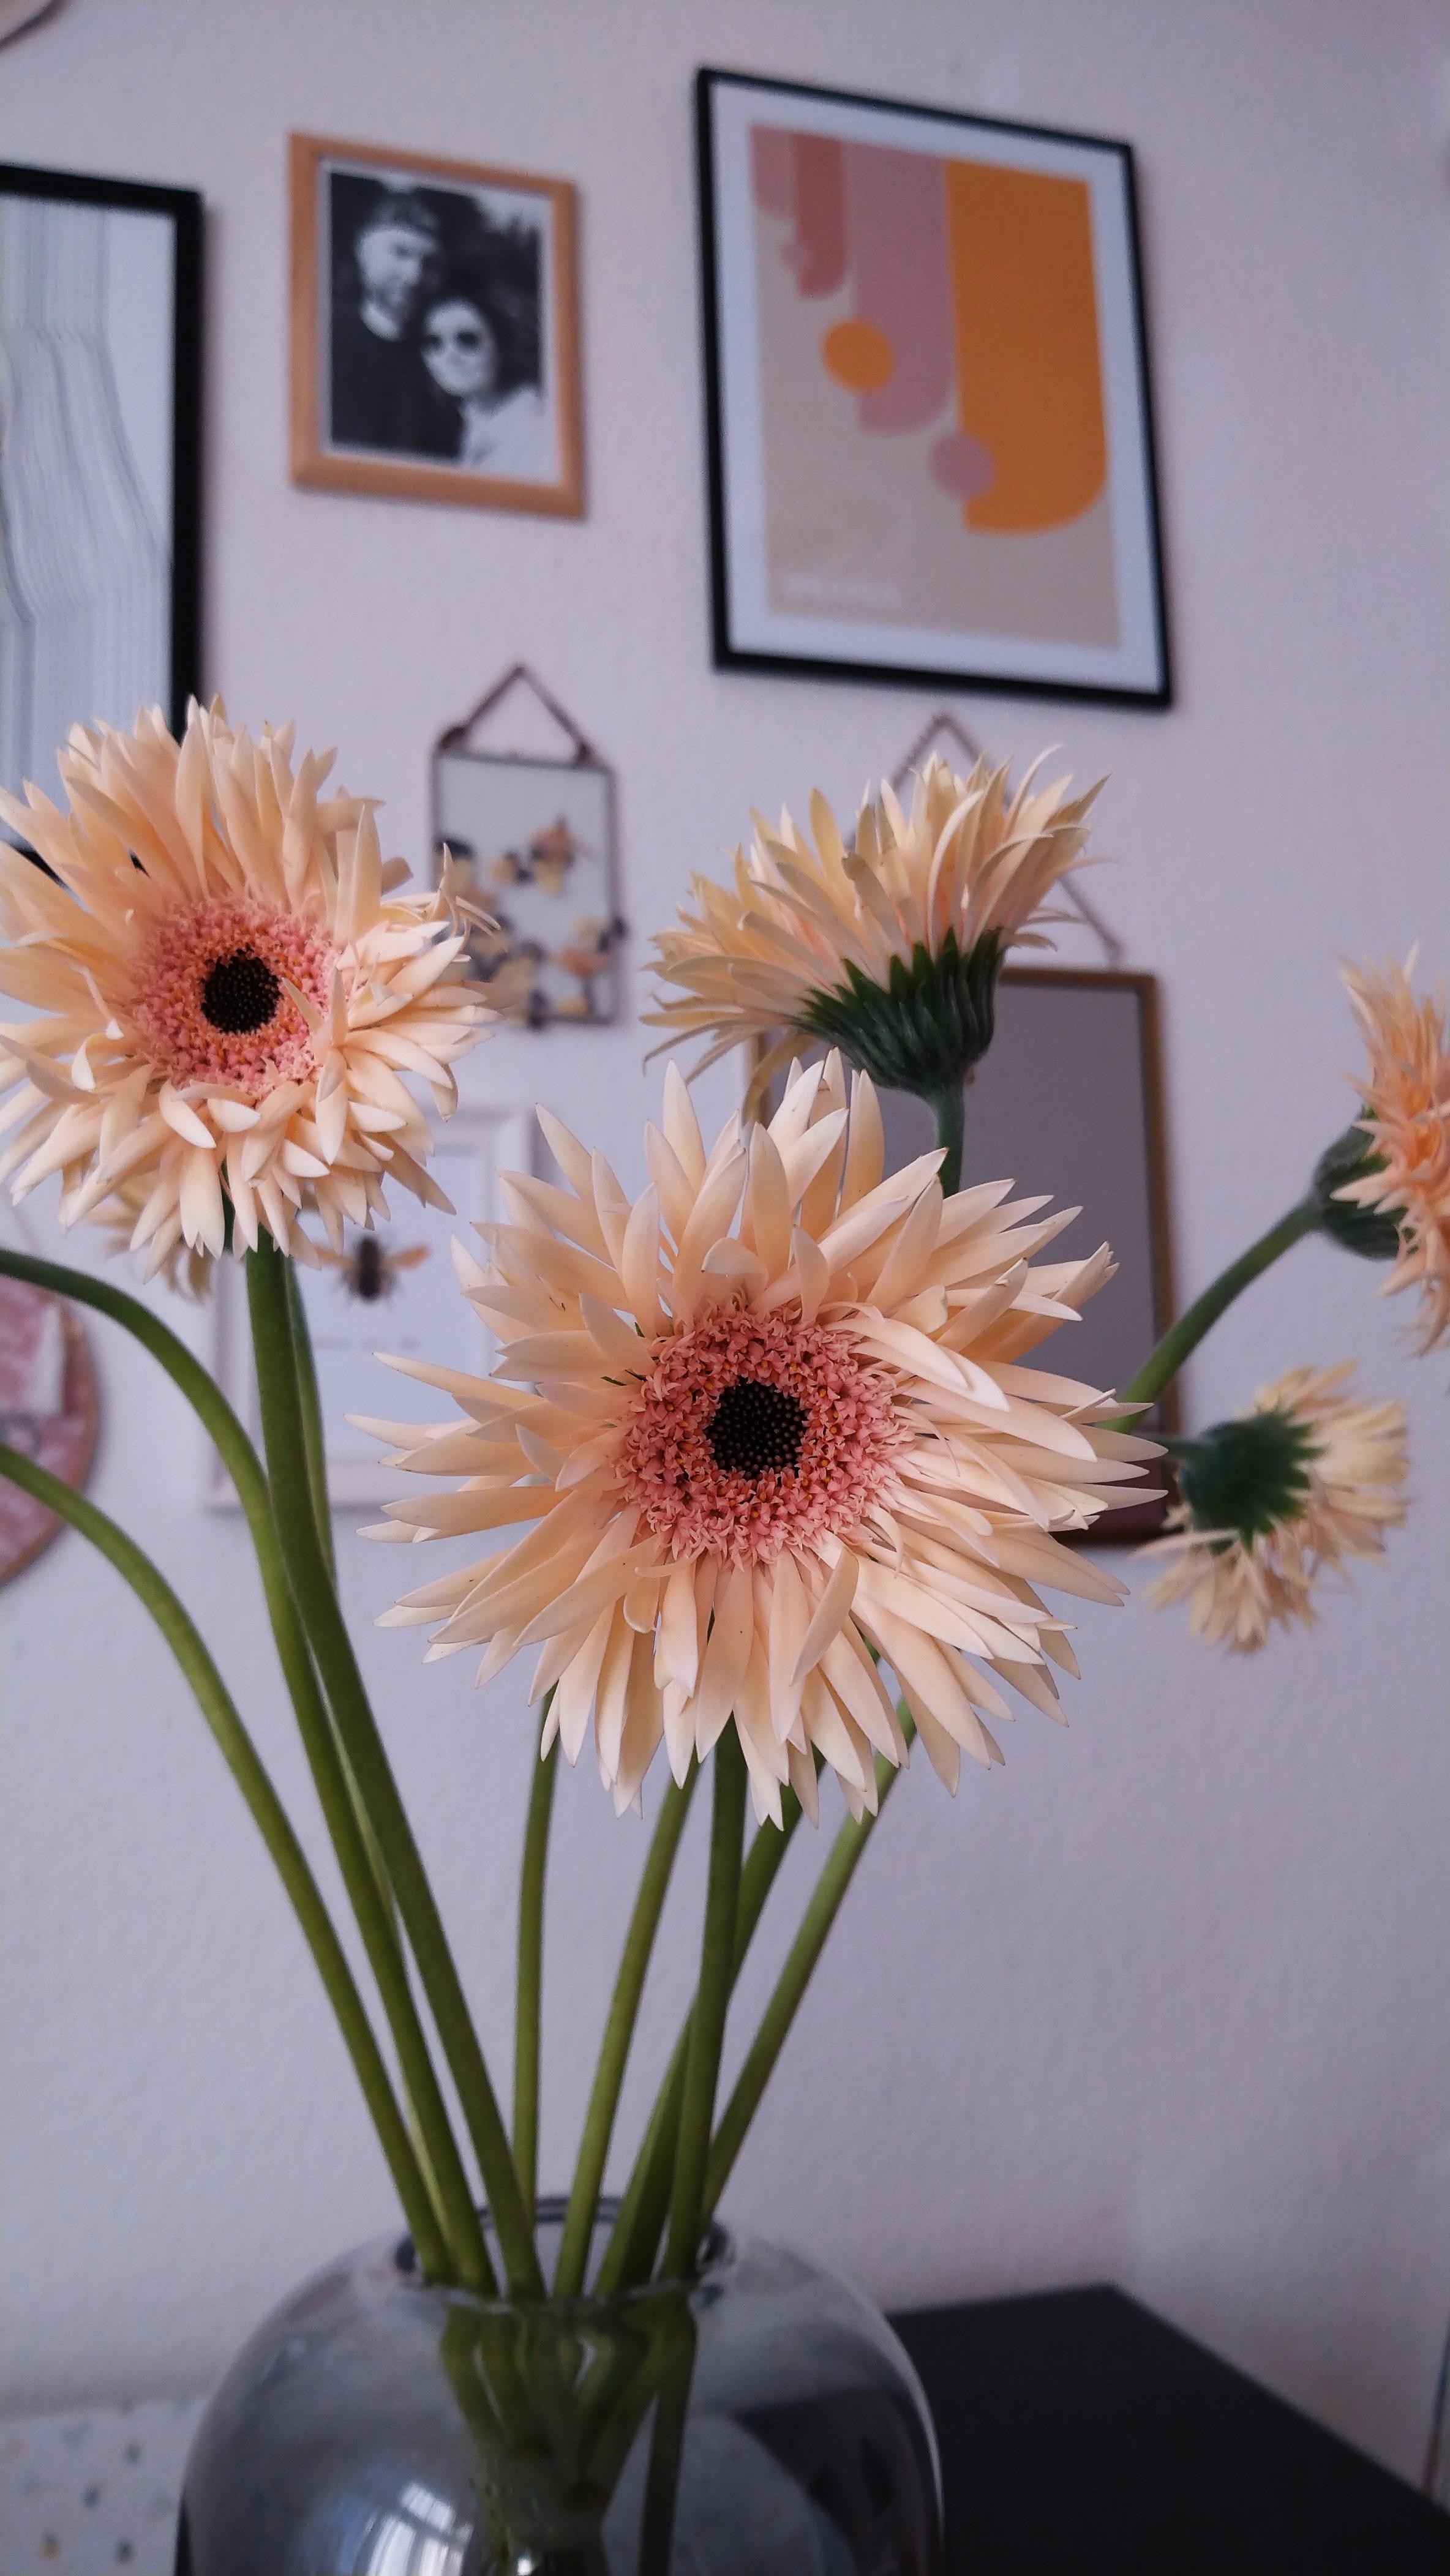 Guten Morgen ihr Hübschen 💕💮🥰
#Freshflowers #Bauhaus #Bilderwand 